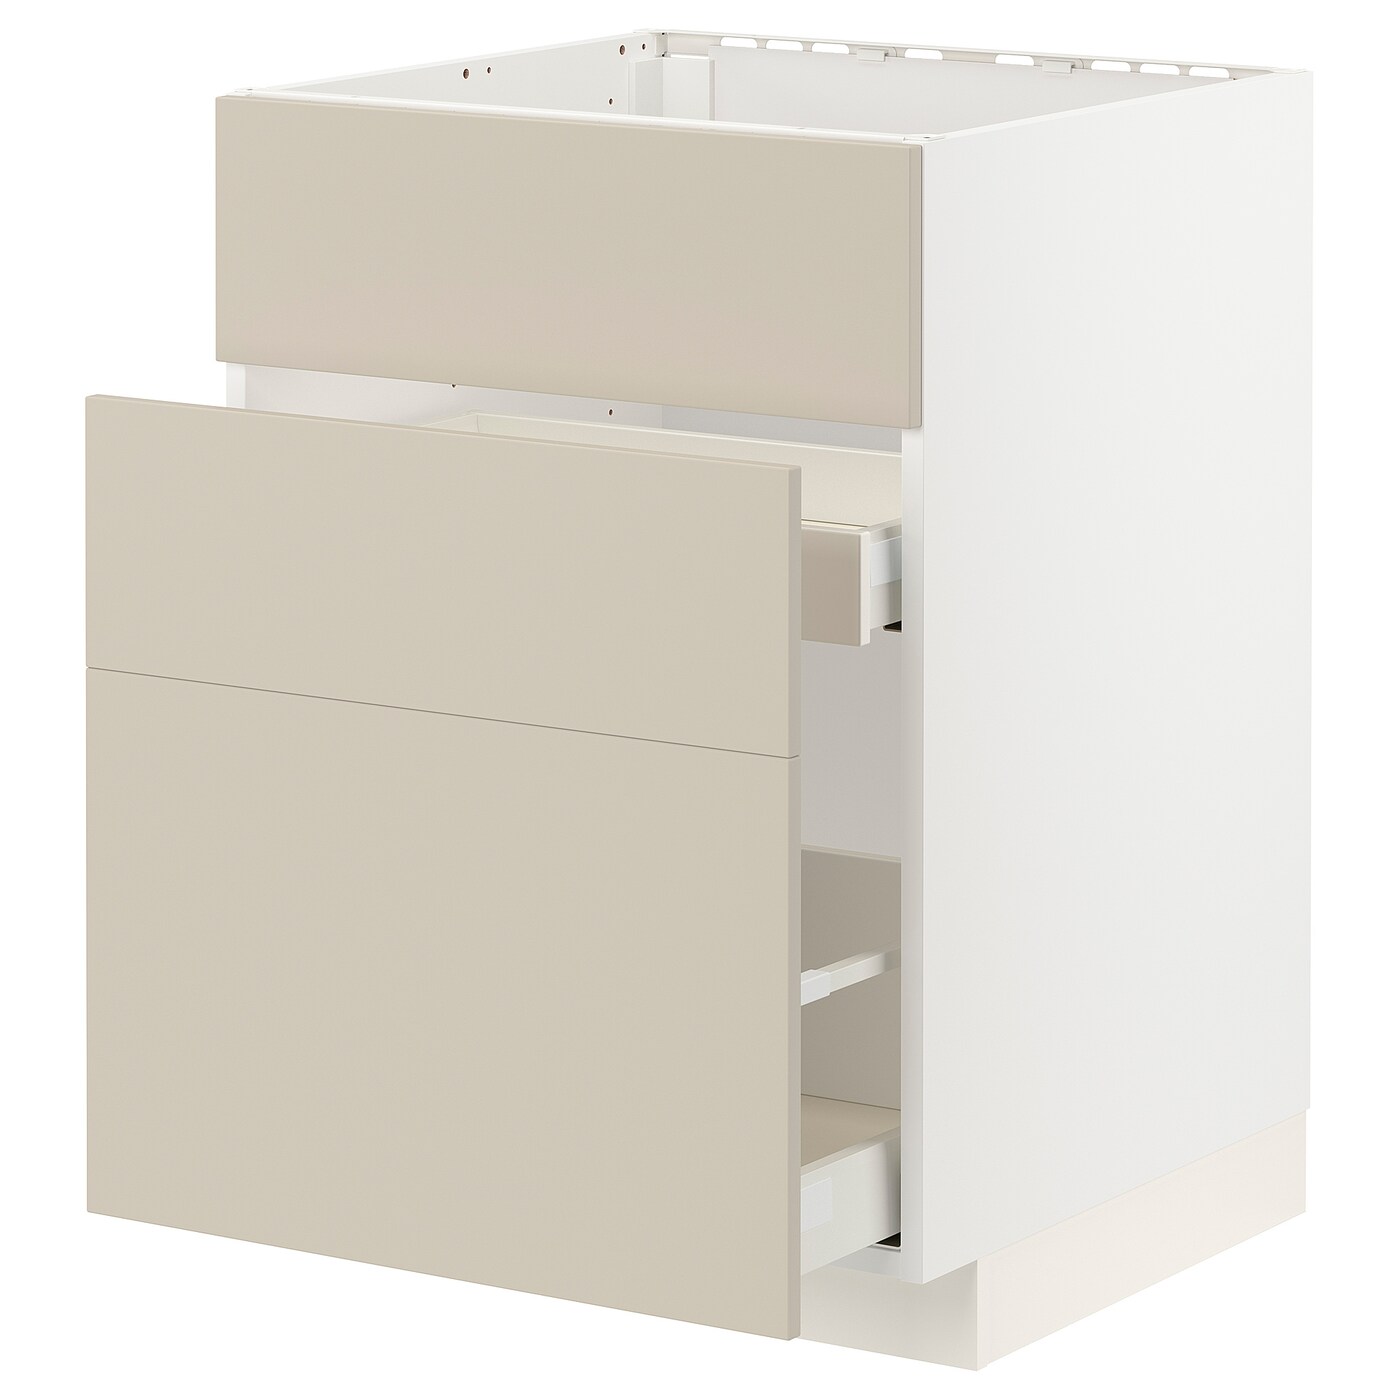 Напольный кухонный шкаф  - IKEA METOD MAXIMERA, 88x61,6x60см, белый/бежевый, МЕТОД МАКСИМЕРА ИКЕА